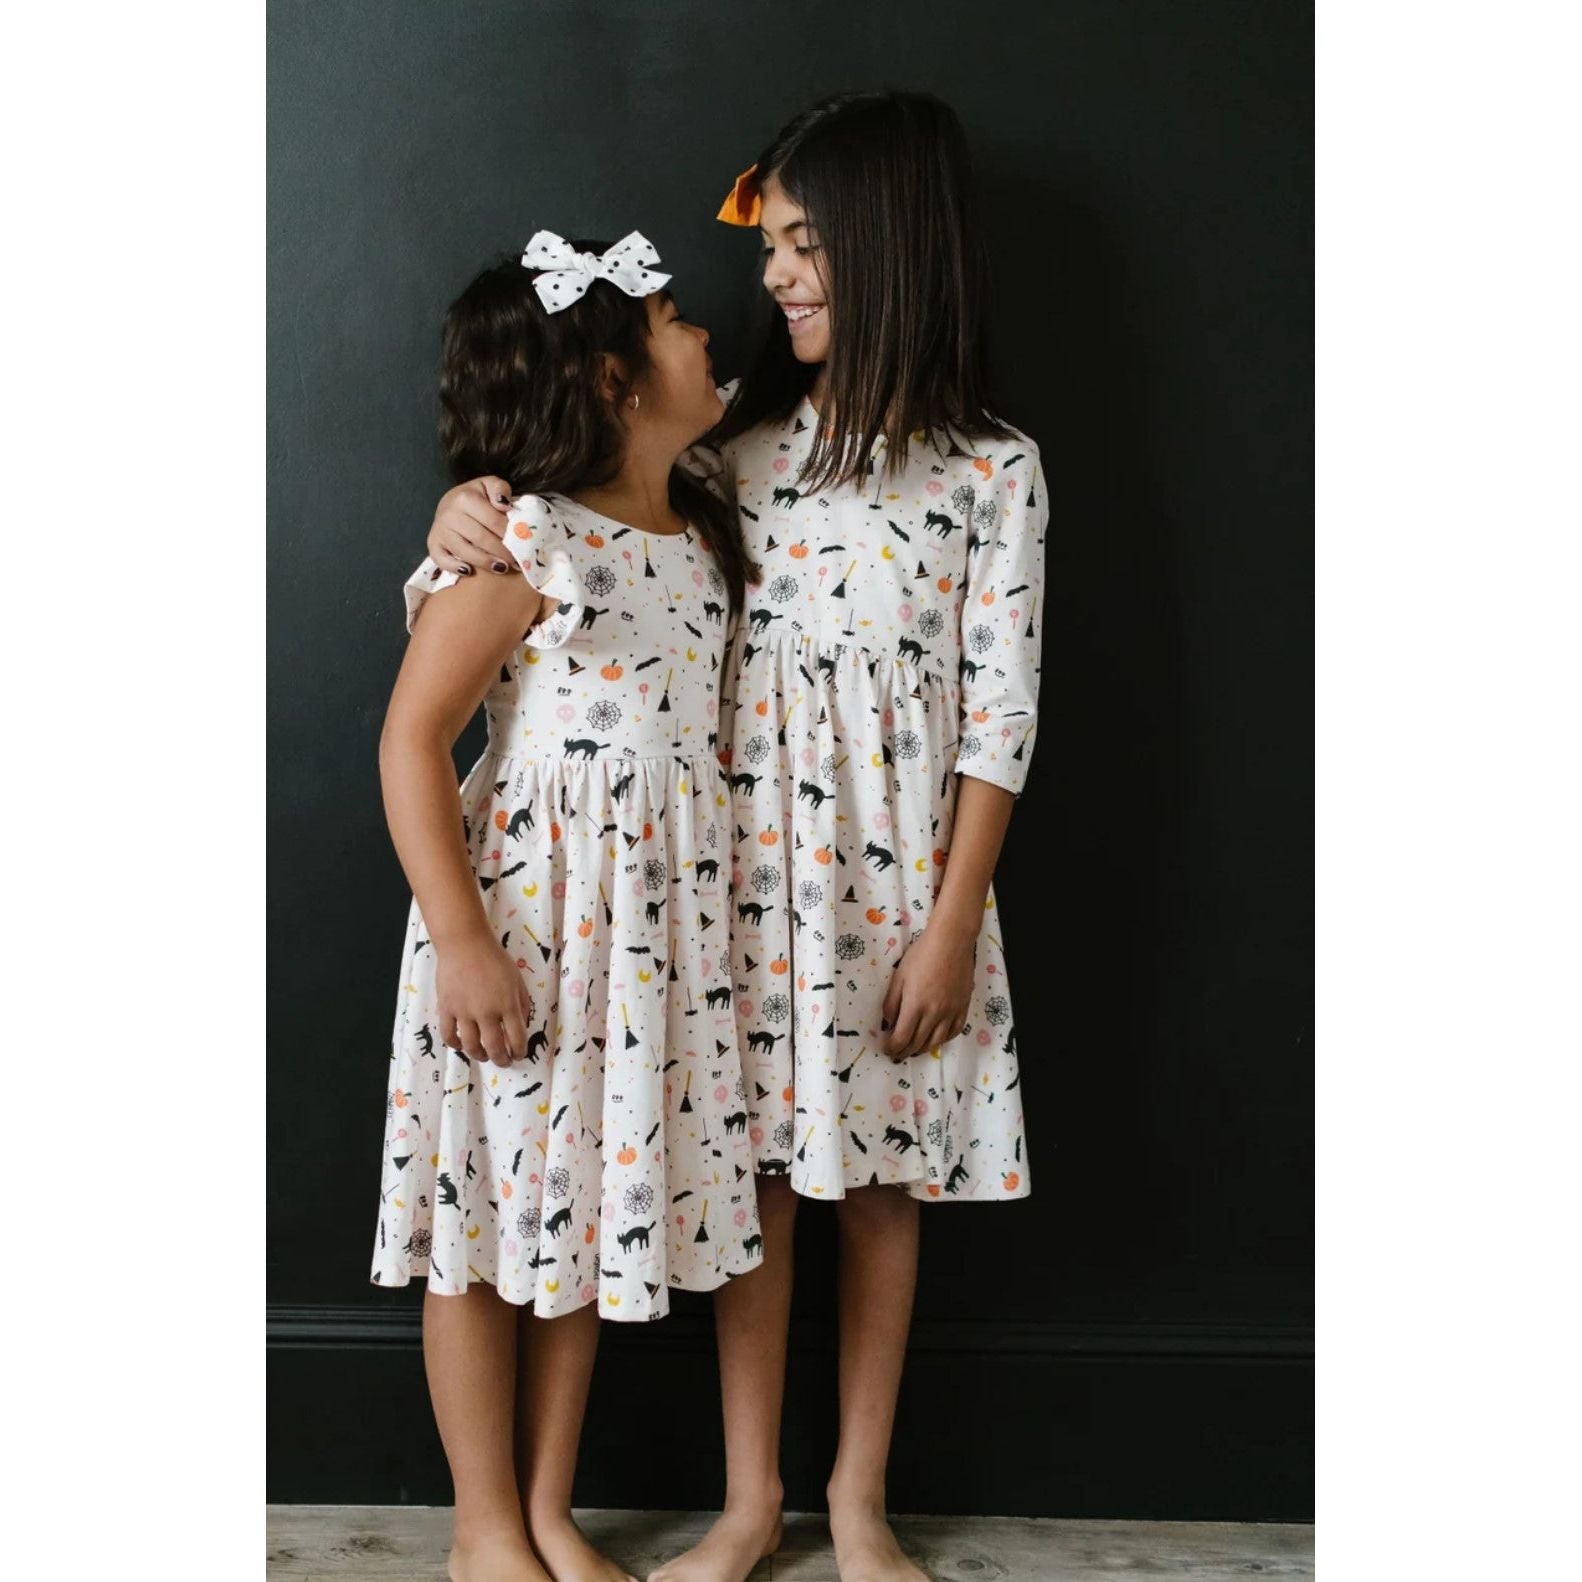 girls wearing white twirl dresses in spooky scenes print